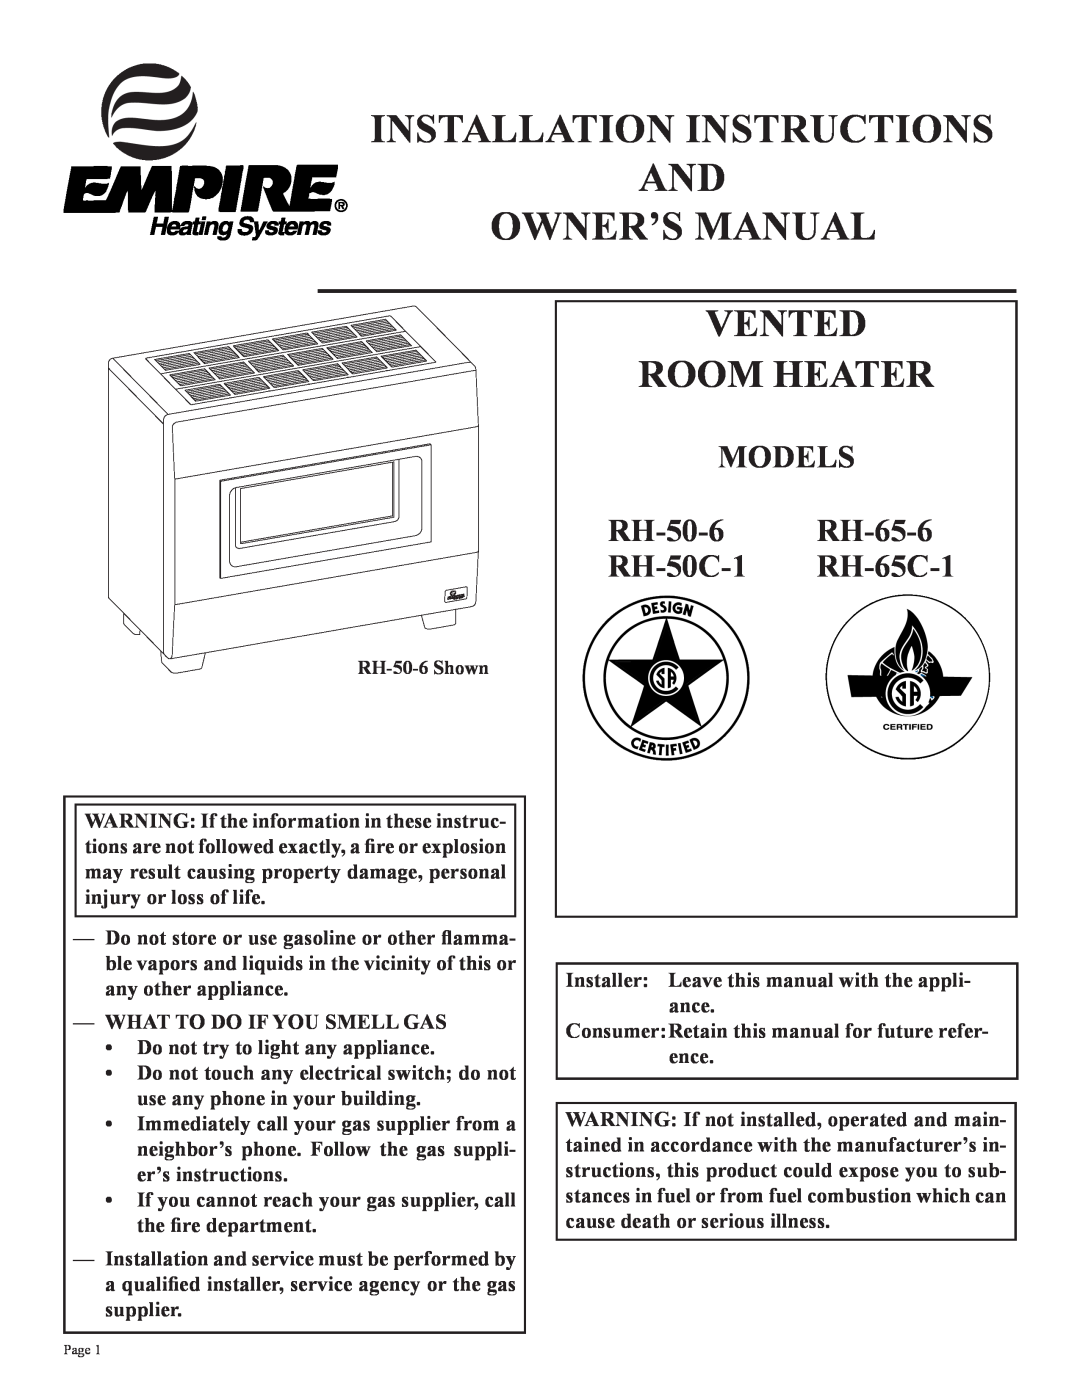 Empire Comfort Systems RH50C-1 installation instructions Vented Room Heater, MODELS RH-50-6 RH-65-6 RH-50C-1 RH-65C-1 